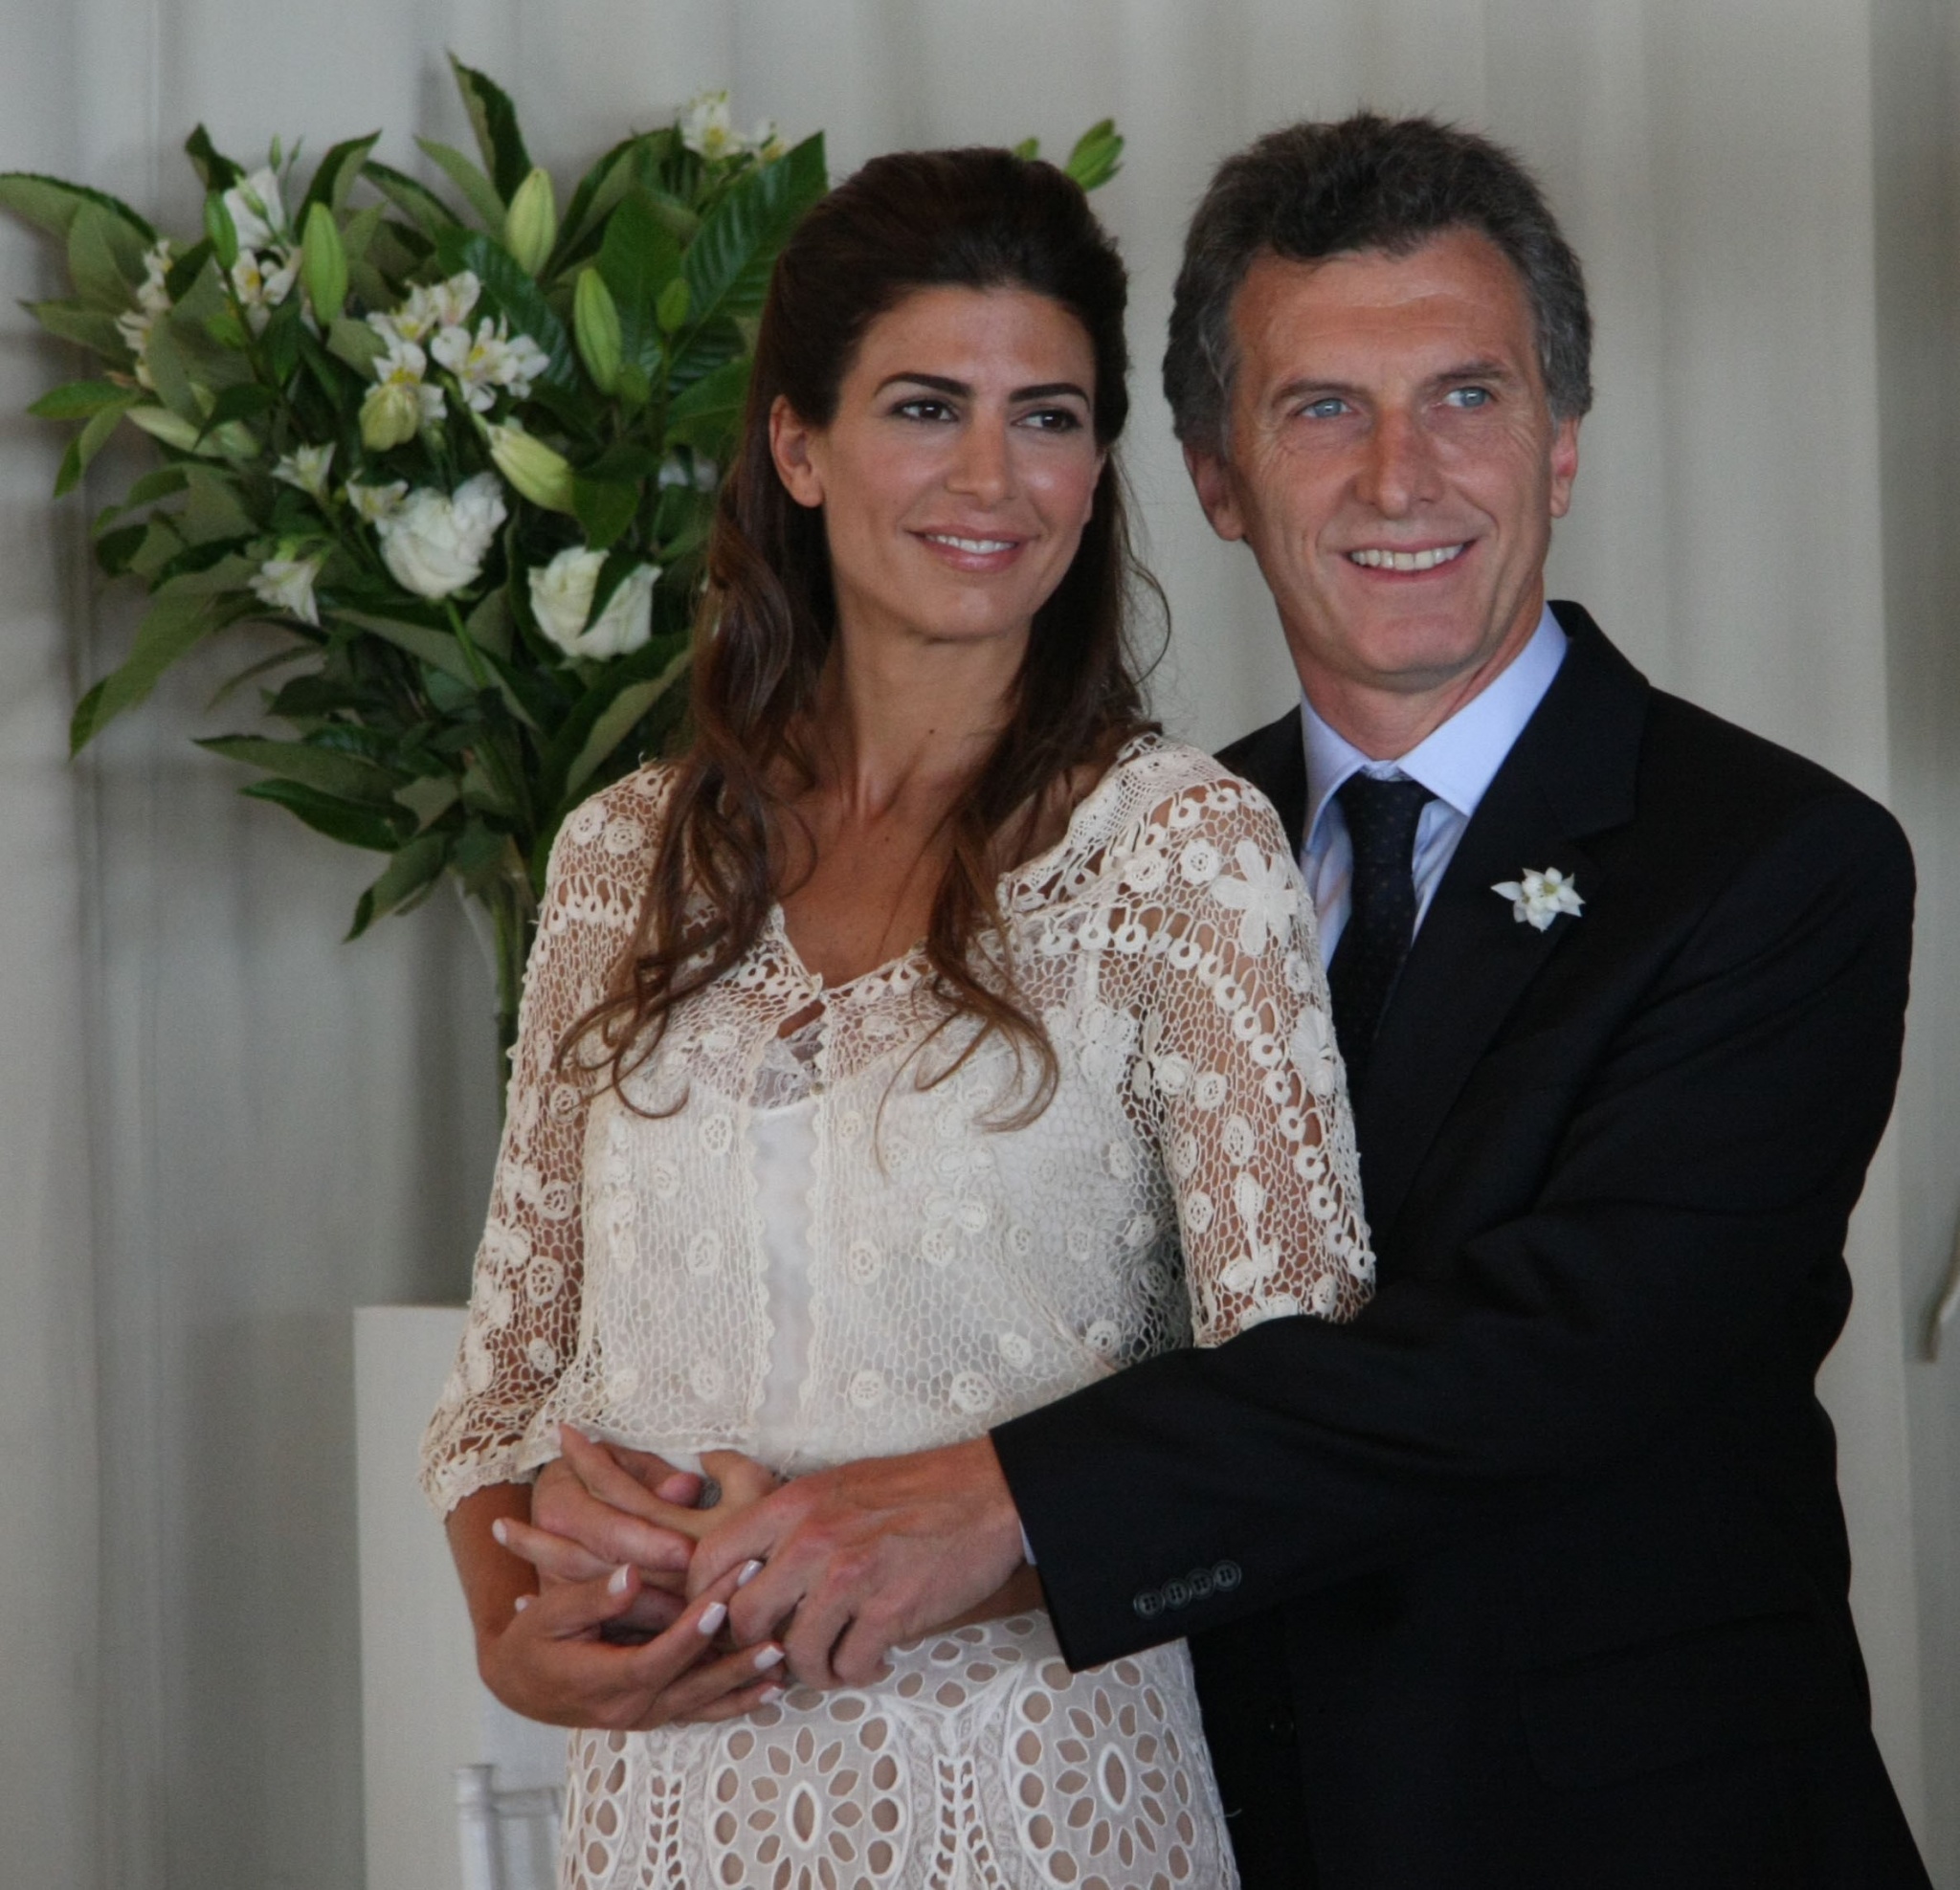 Mauricio Macri et sa sublime femme Juliana Awada, une aide discrète mais réelle pour conquérir les Argentins pendant la campagne. Crédit Photo : Mauricio Macri / Flickr CC. 